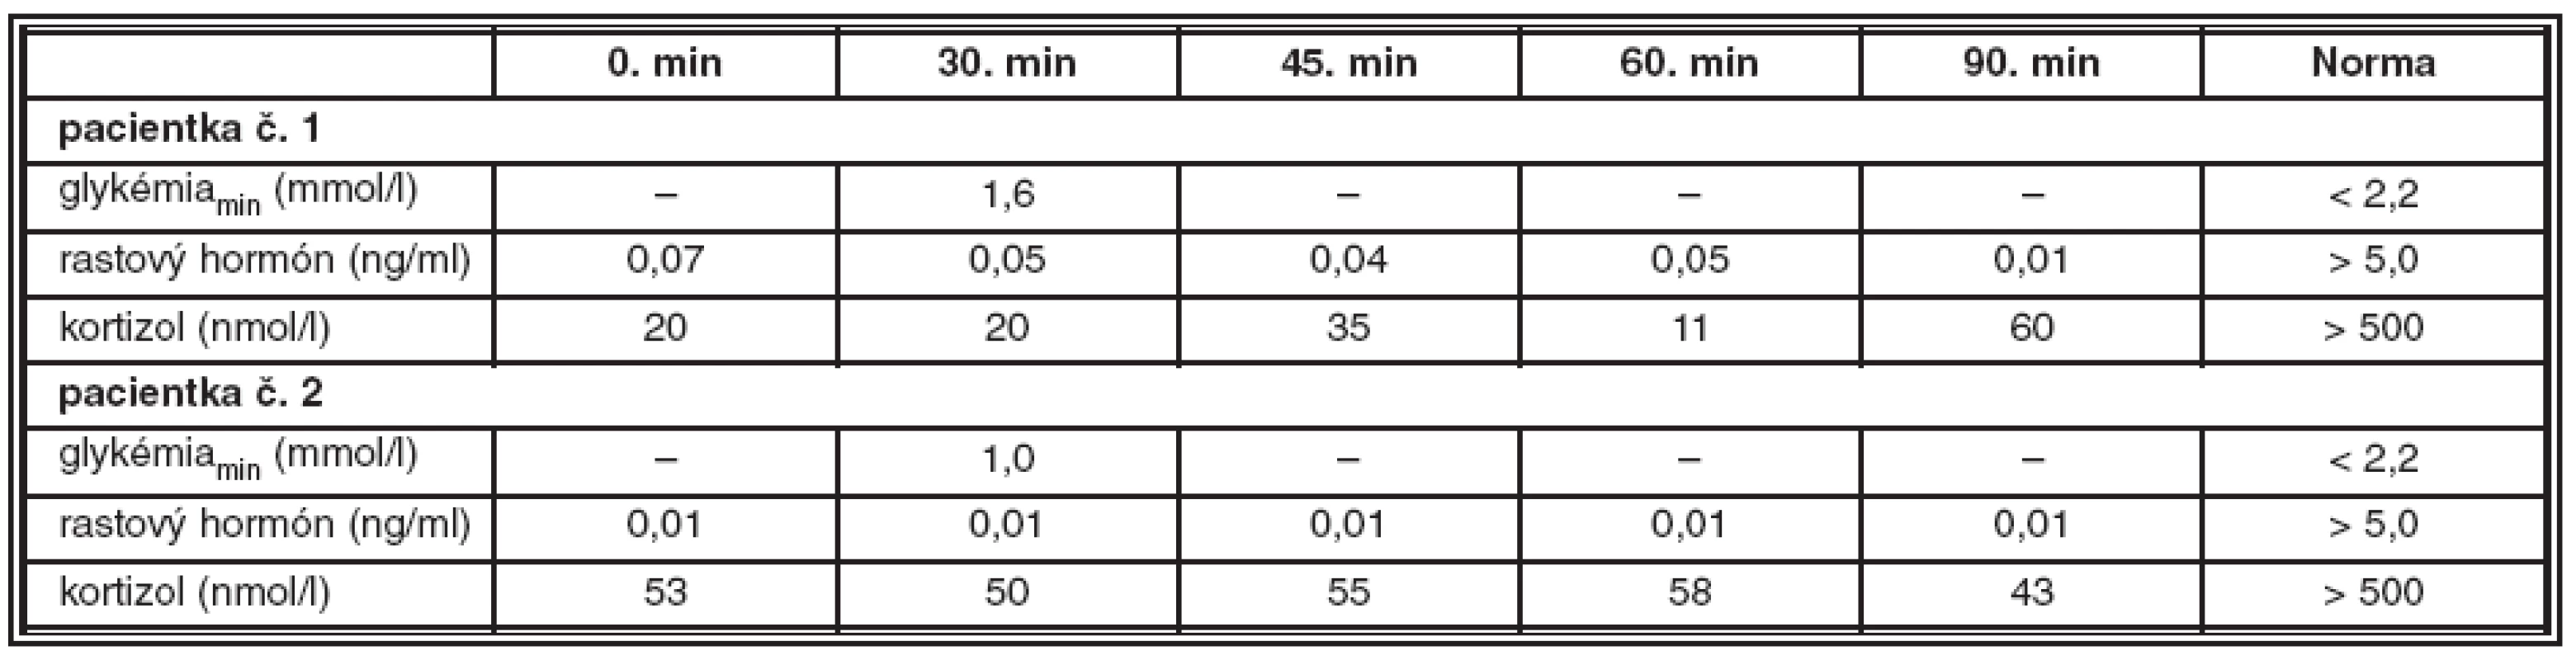 Výsledky stimulačných testov s postinzulínovou hypoglykémiou u pacientky č. 1 a pacientky č. 2